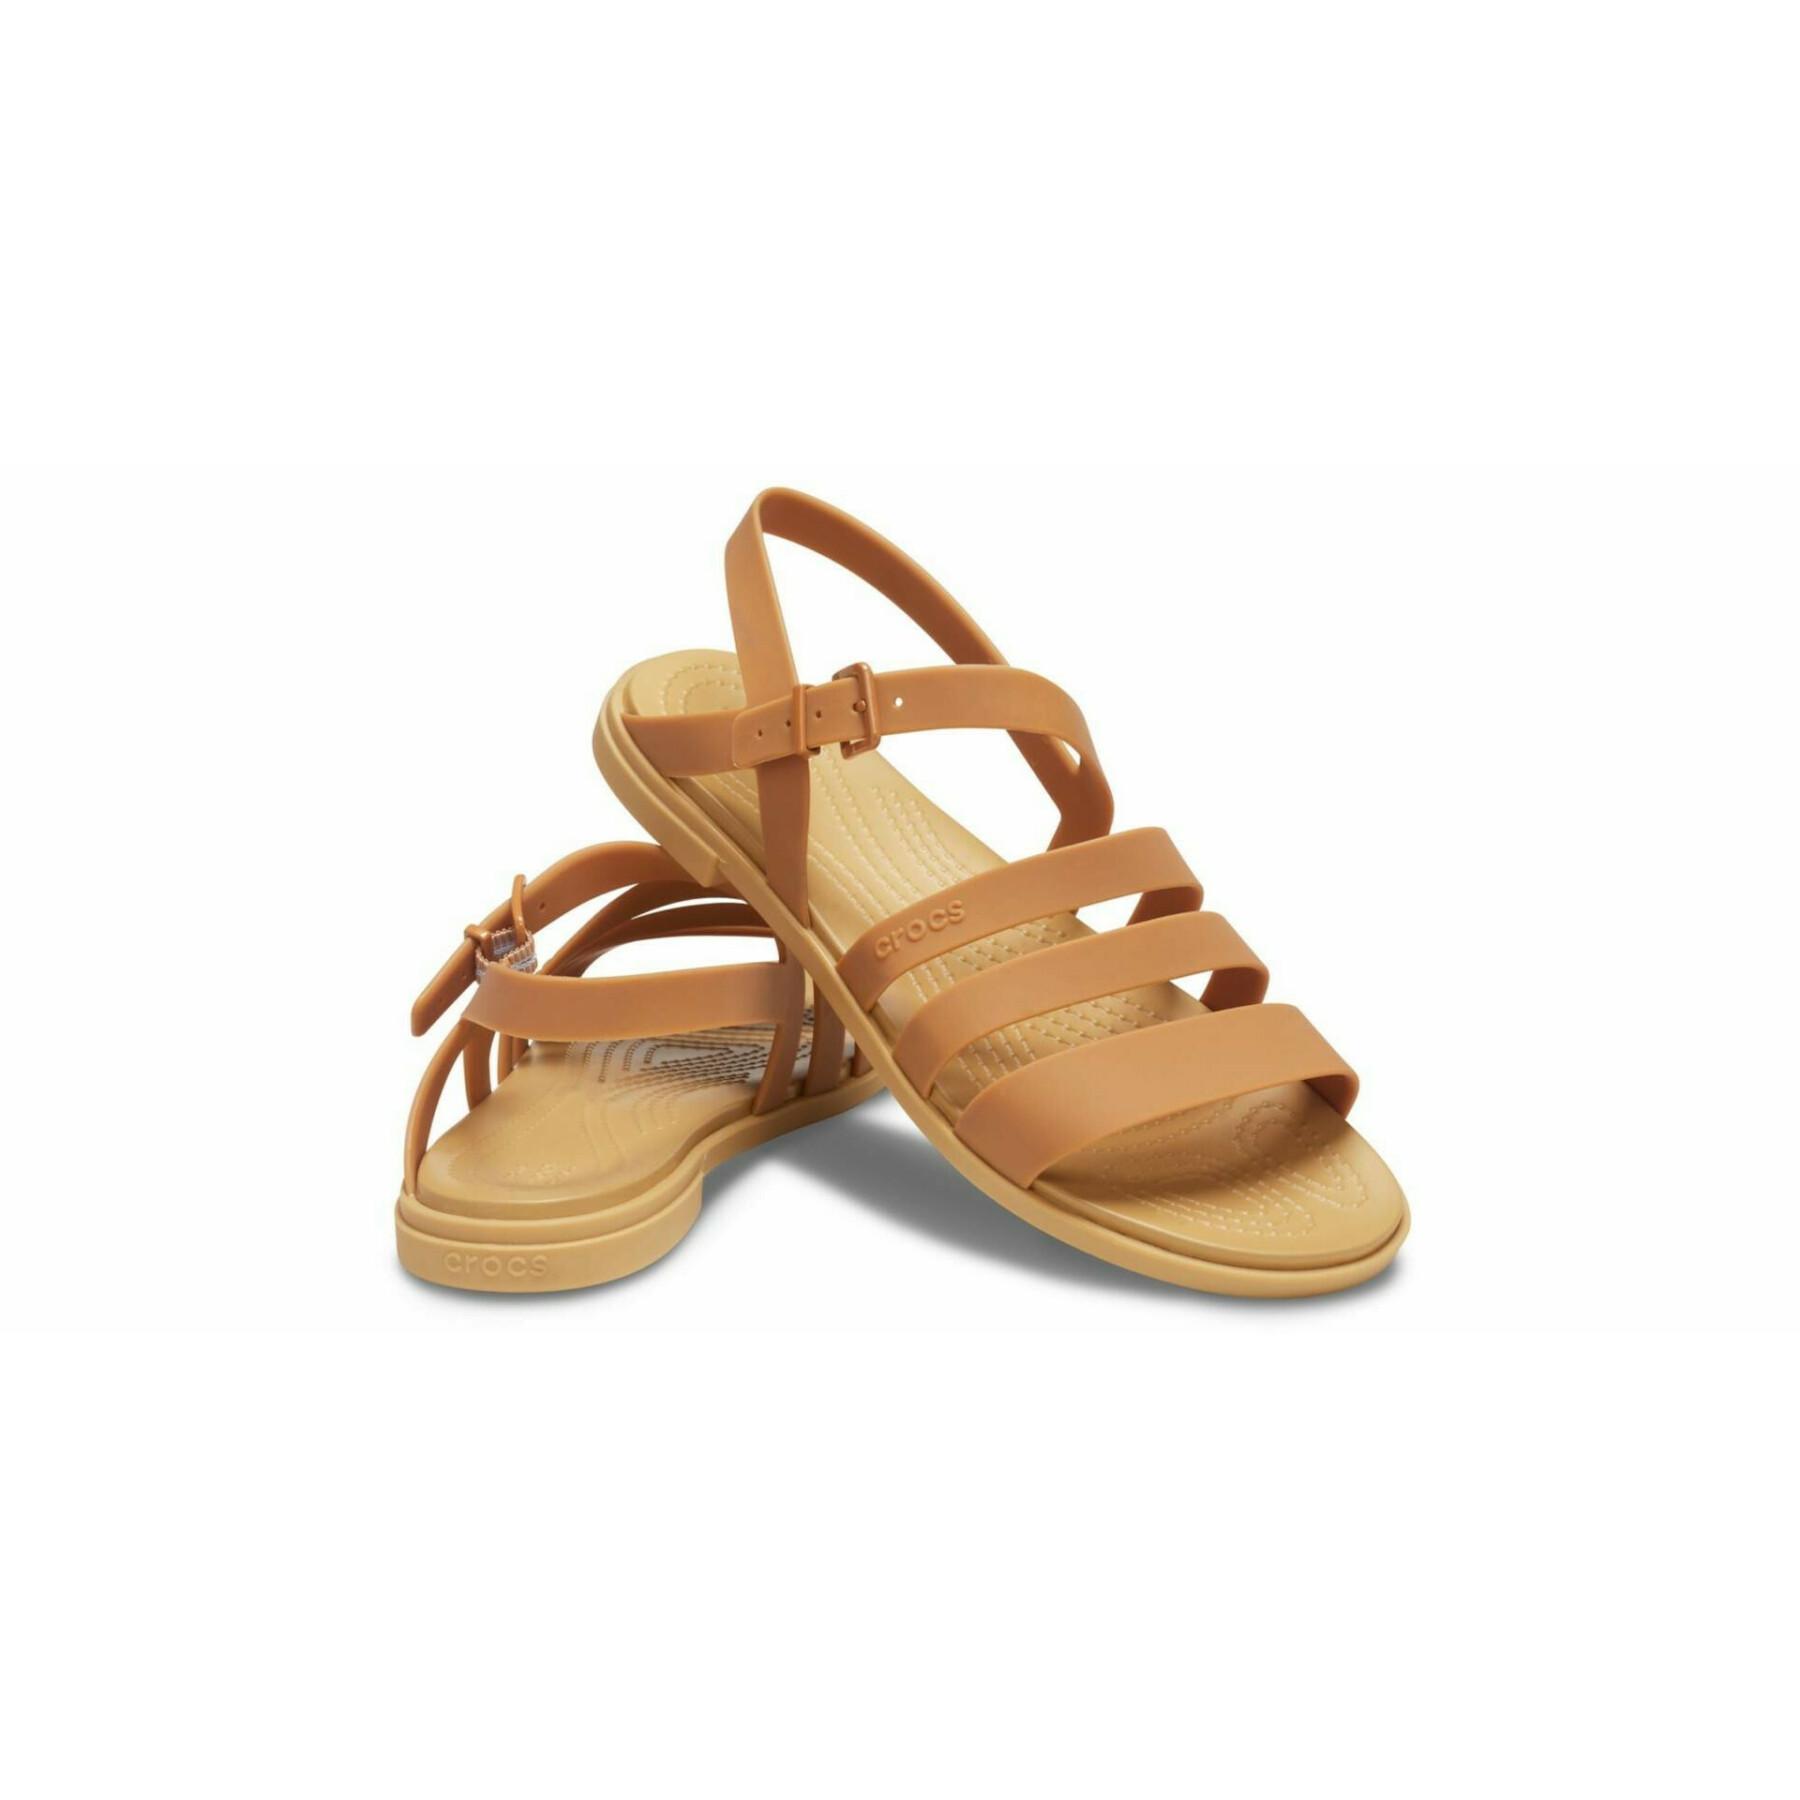 Women's sandals Crocs tulum